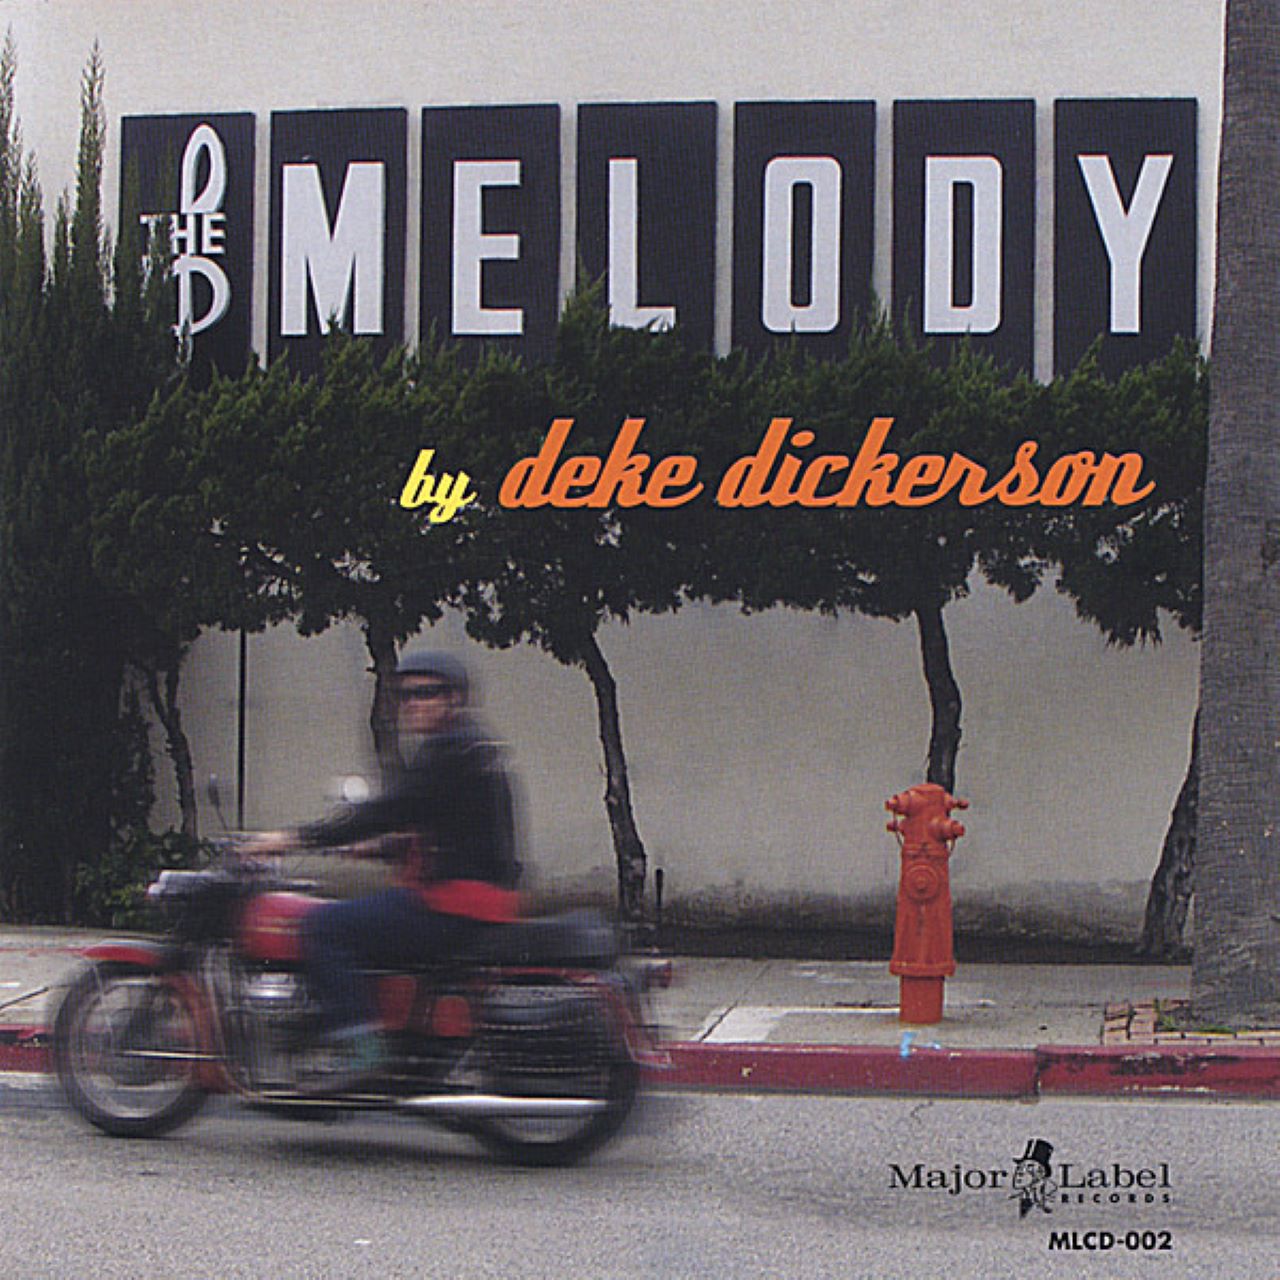 Deke Dickerson - The Melody cover album